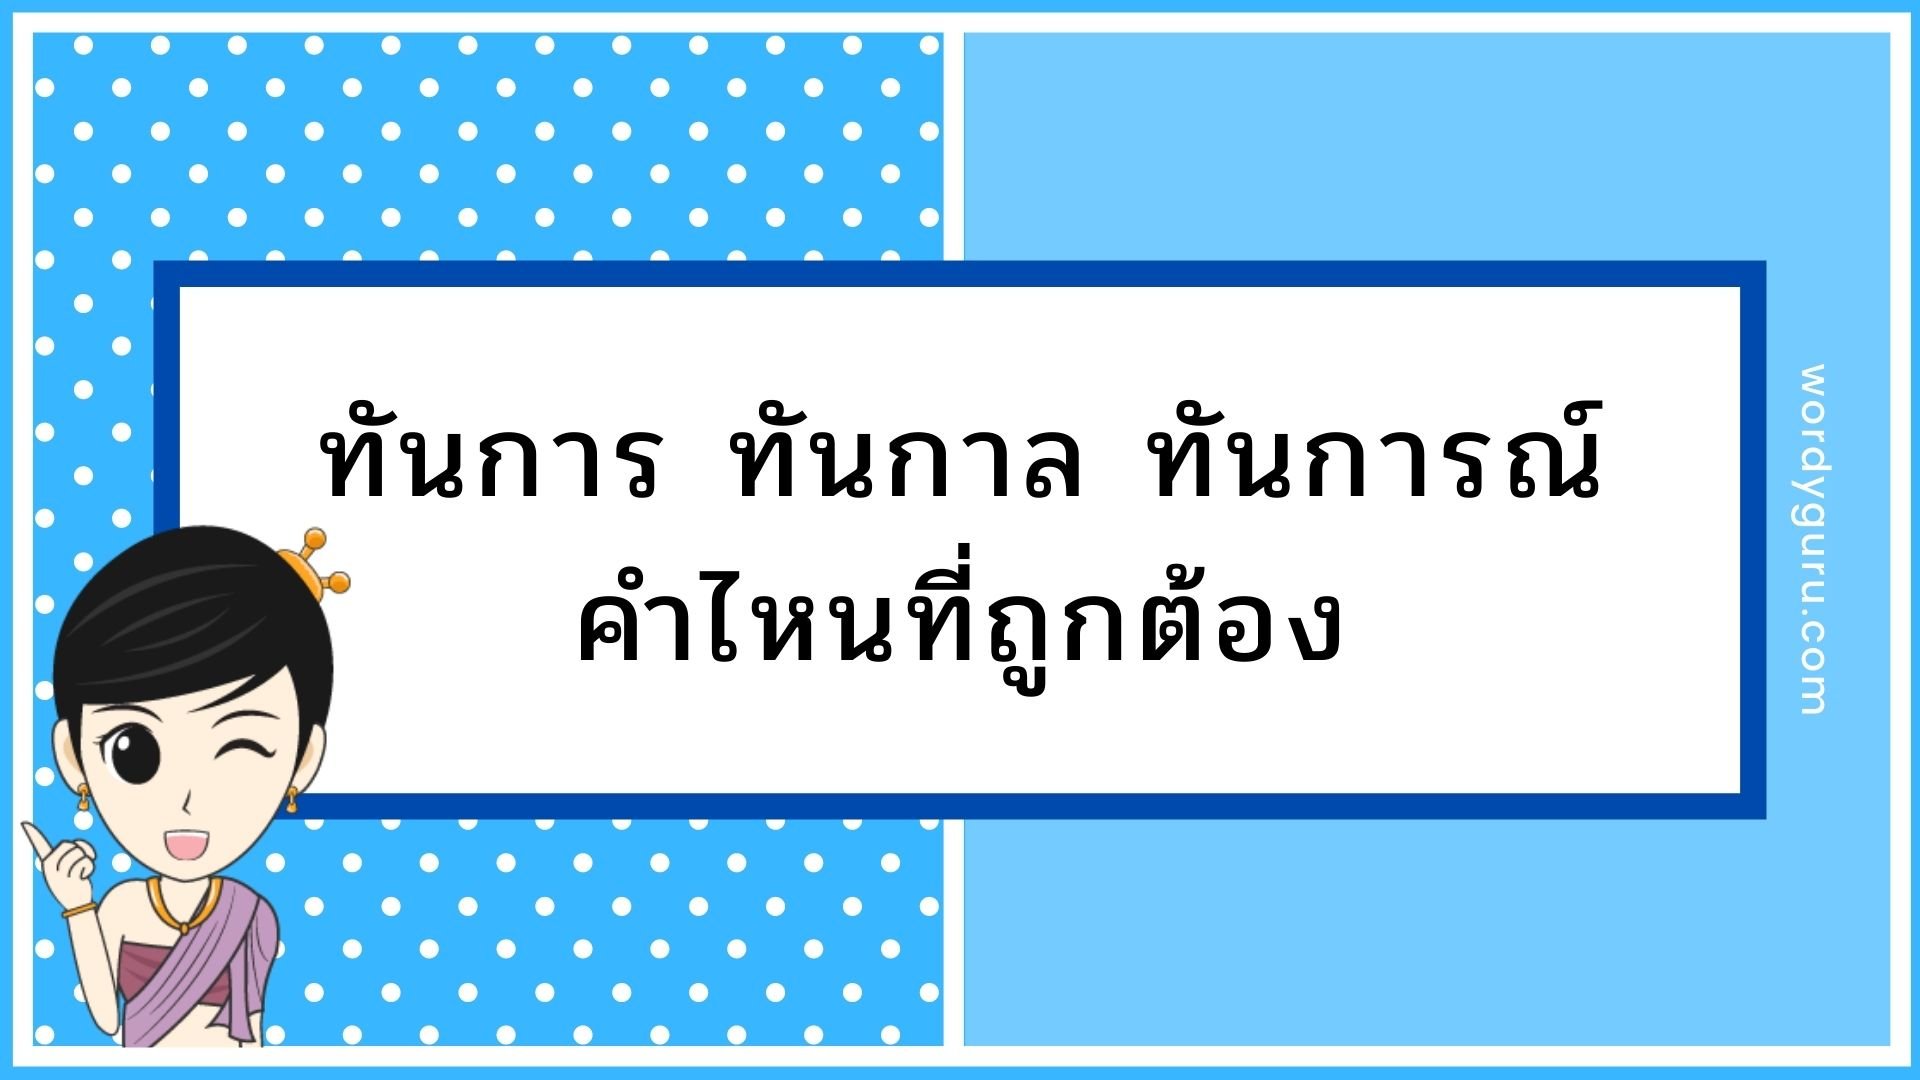 คำในภาษาไทยมักสร้างความสับสนให้กับผู้ใช้อยู่เสมอ แม้แต่คนไทยที่ใช้ภาษาไทยเป็นประจำอย่างเรา ๆ ในบางครั้งยังเกิดความไม่แน่ใจว่าคำนั้นต้องเขียนและสะกดอย่างไรให้ถูกต้อง